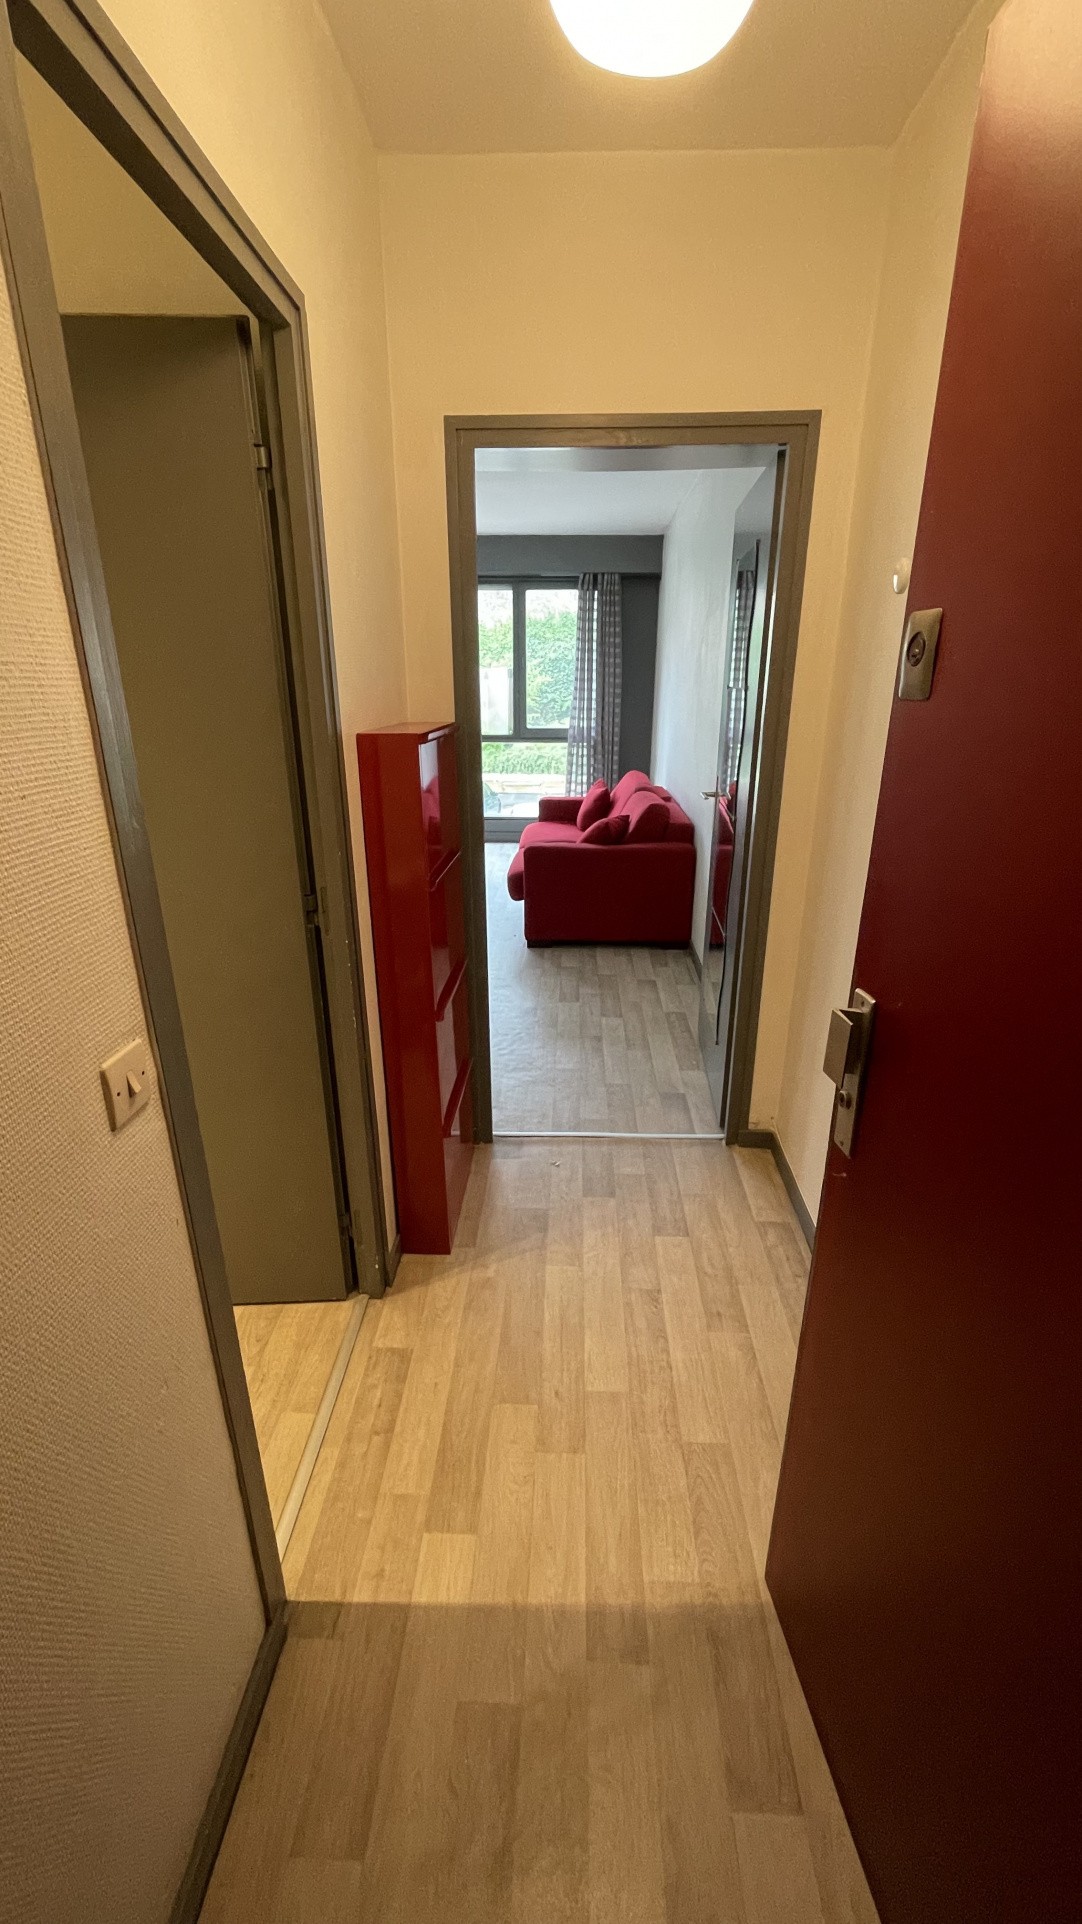 Vente Appartement à Lille 1 pièce